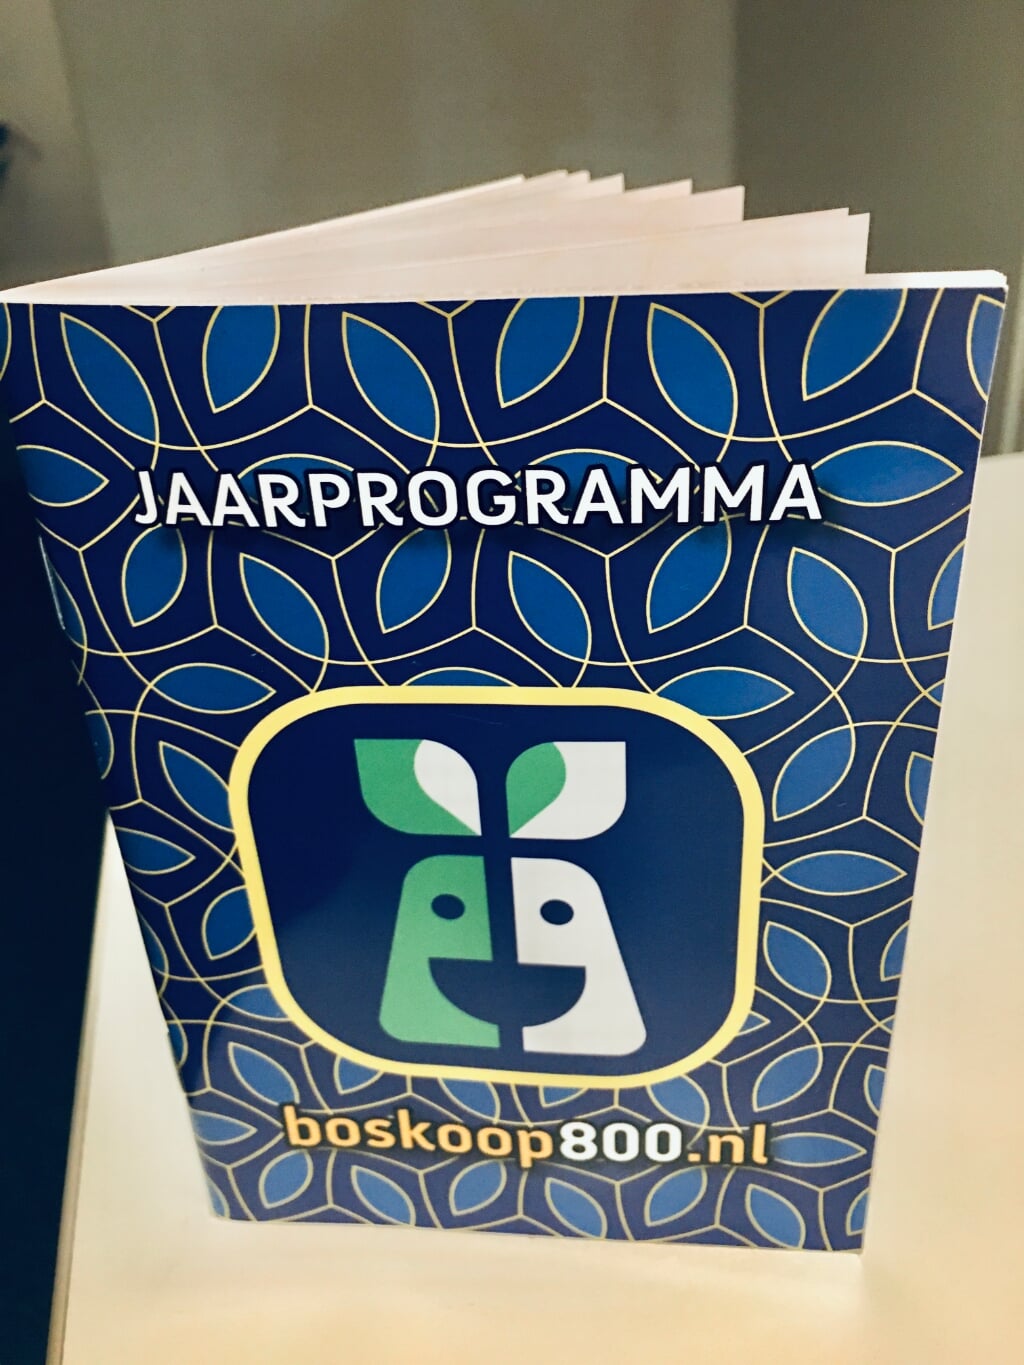 De Boskopers ontvingen het Jaarprogramma Boskoop800 in de brievenbus.